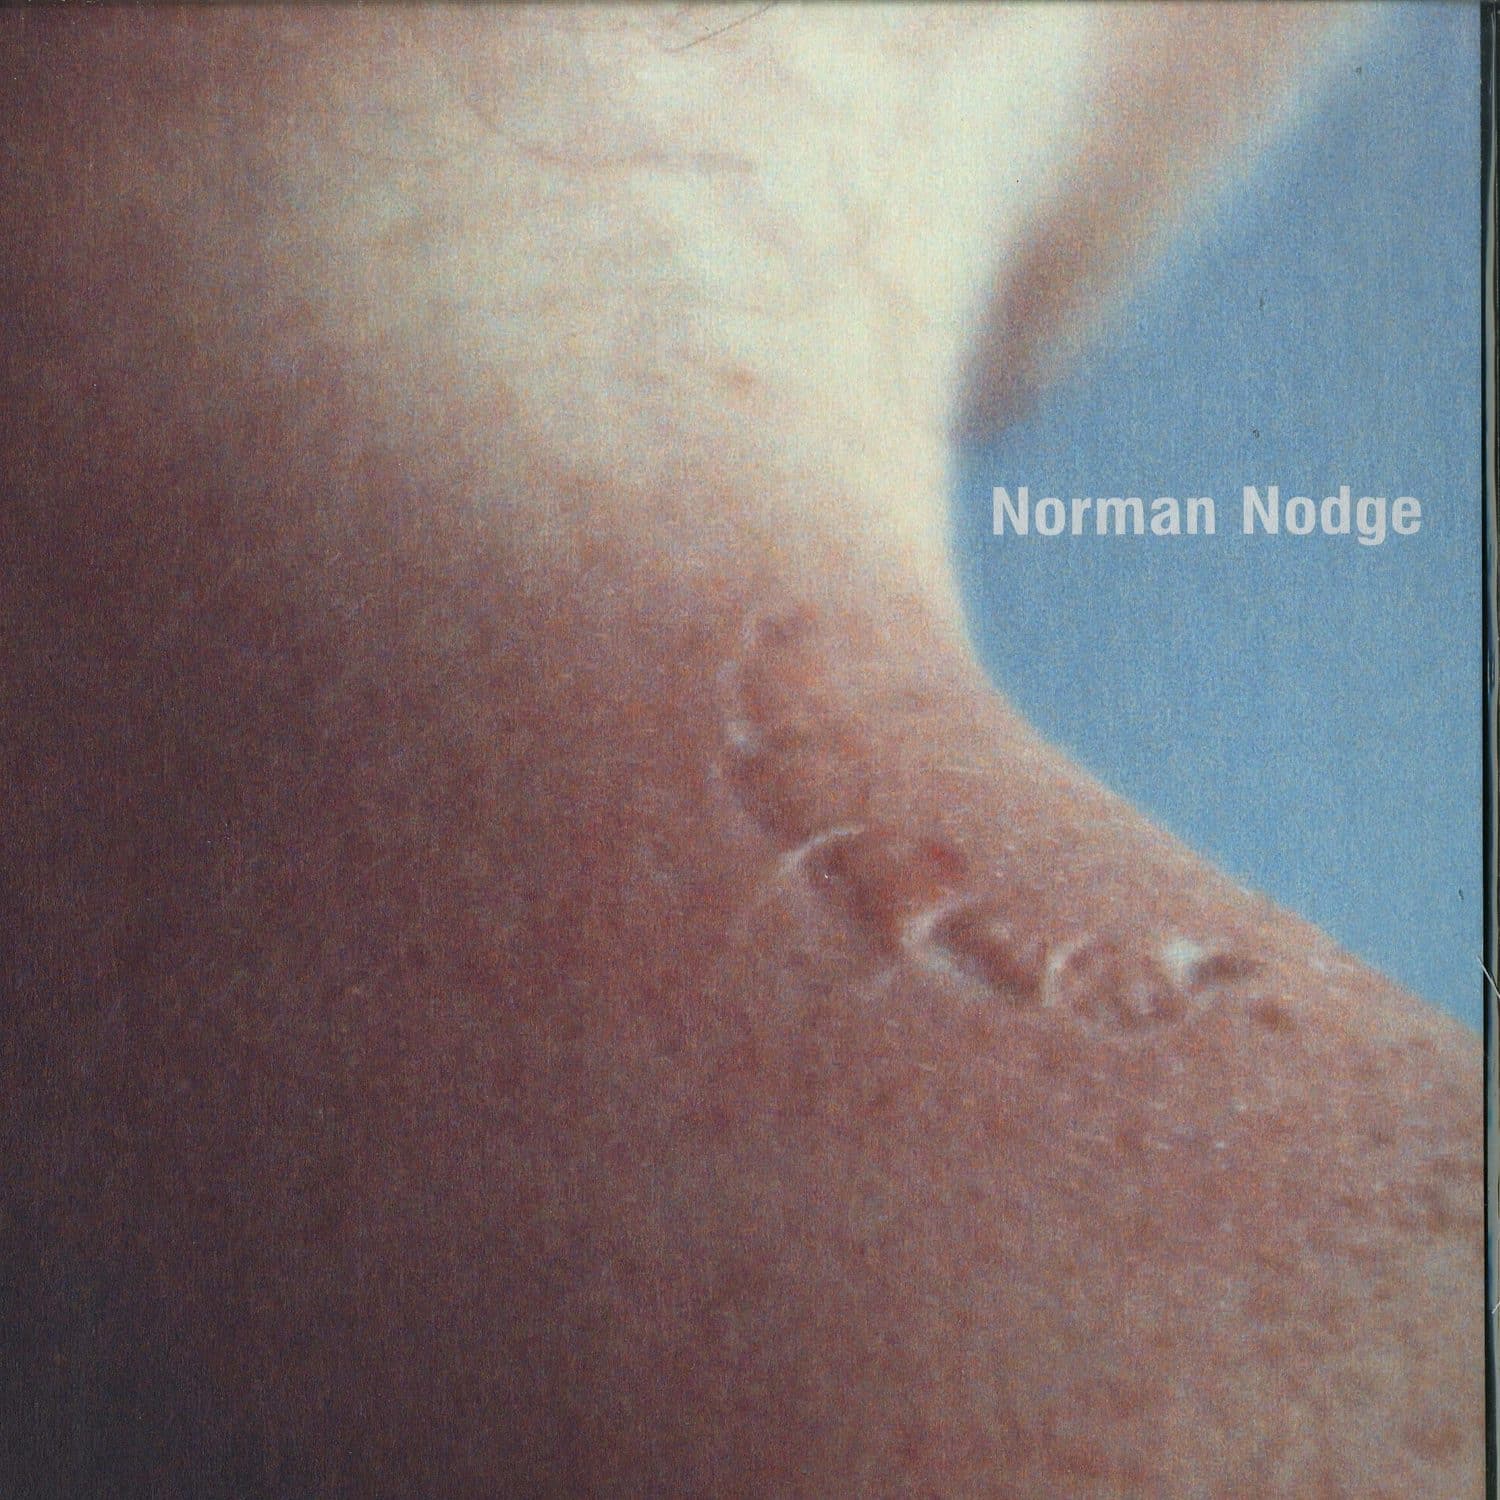 Norman Nodge - EMBODIMENT EP